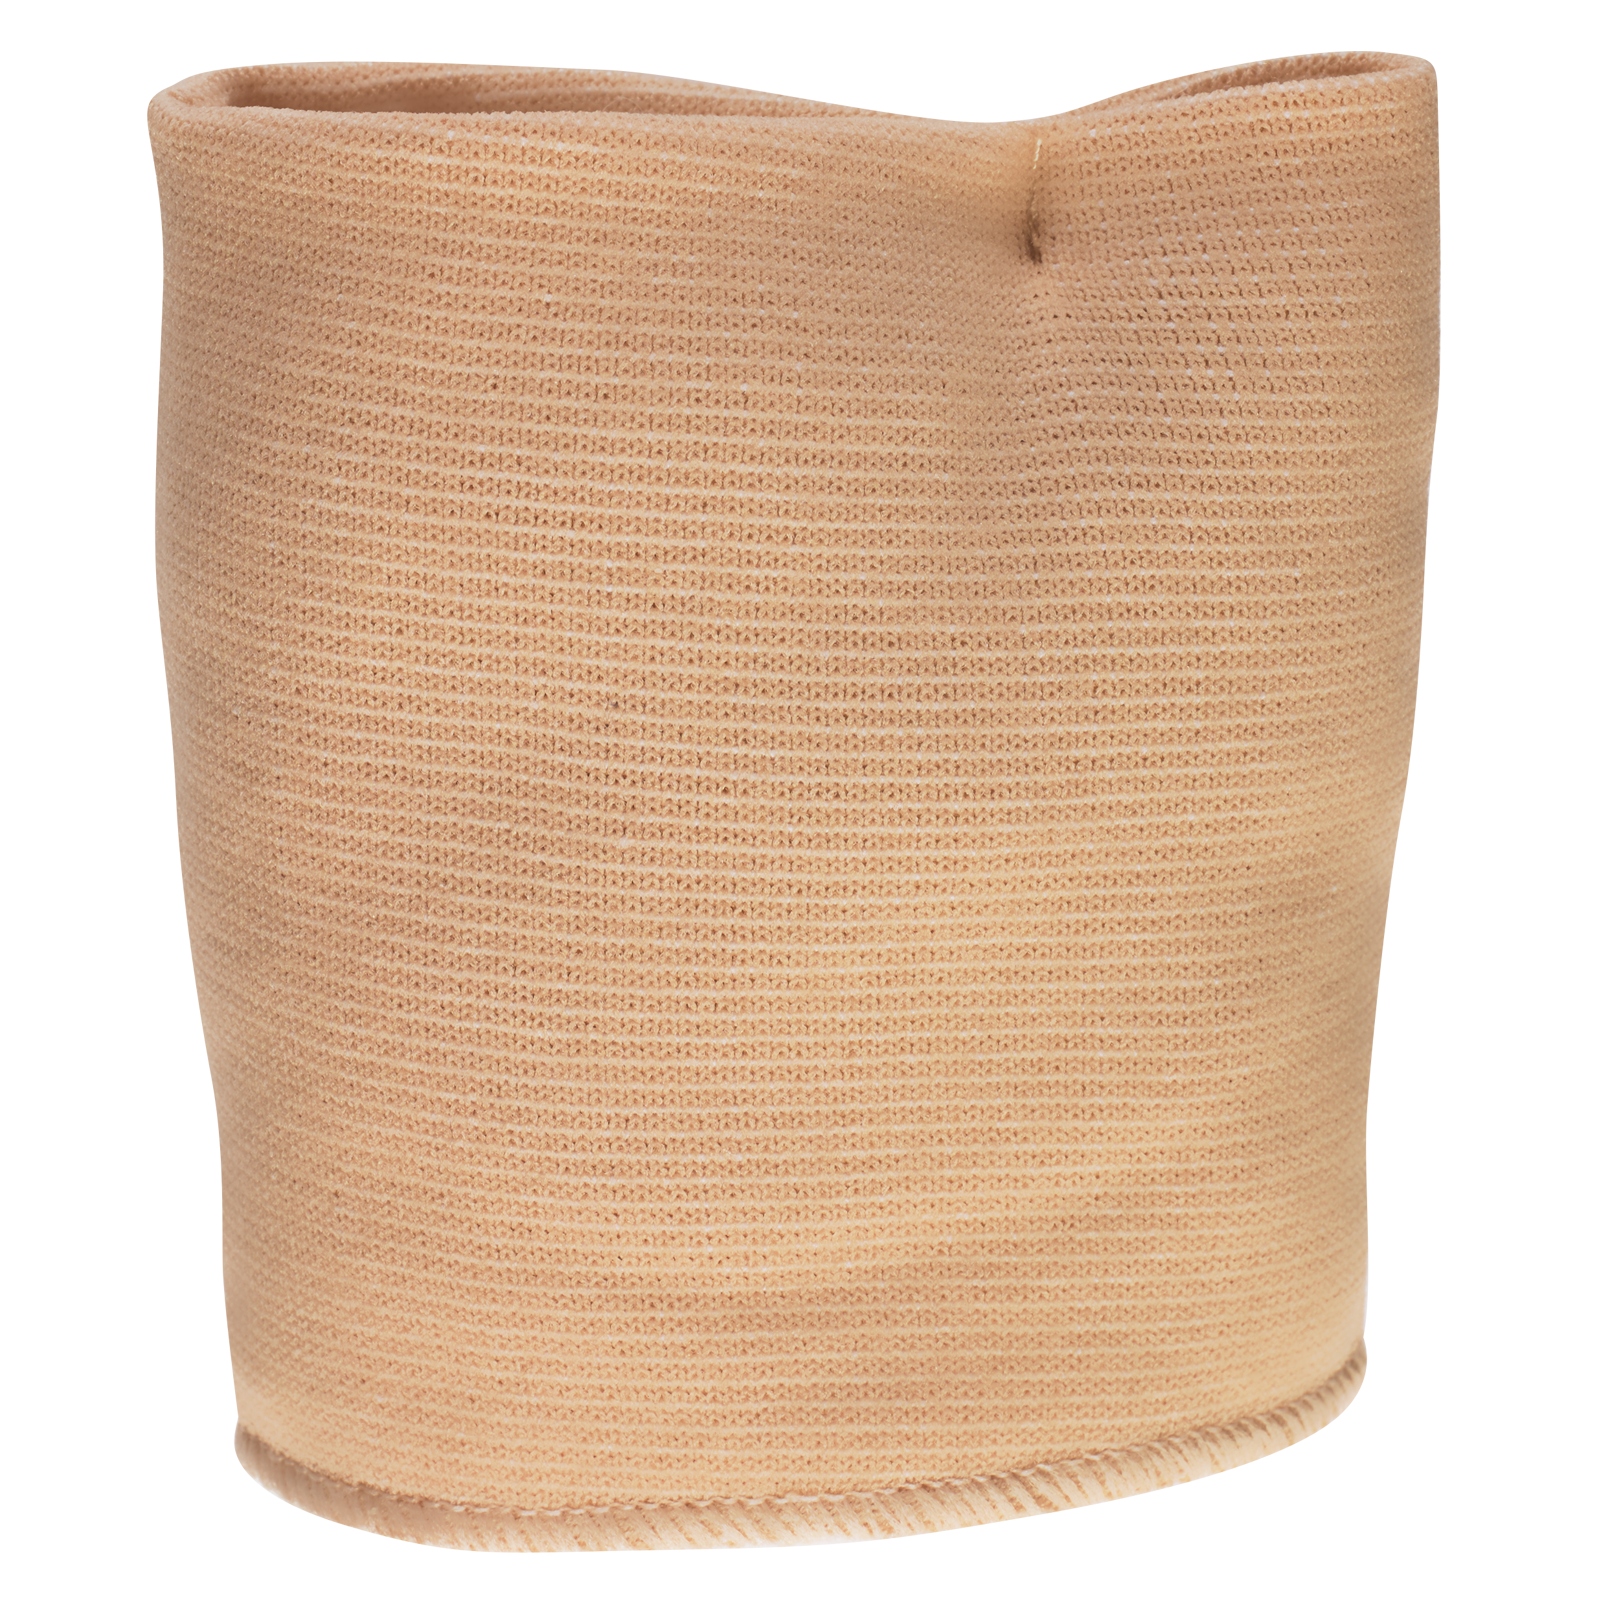 GEHWOL Vorfusspolster mit Bandage links, gross, 1 Stück